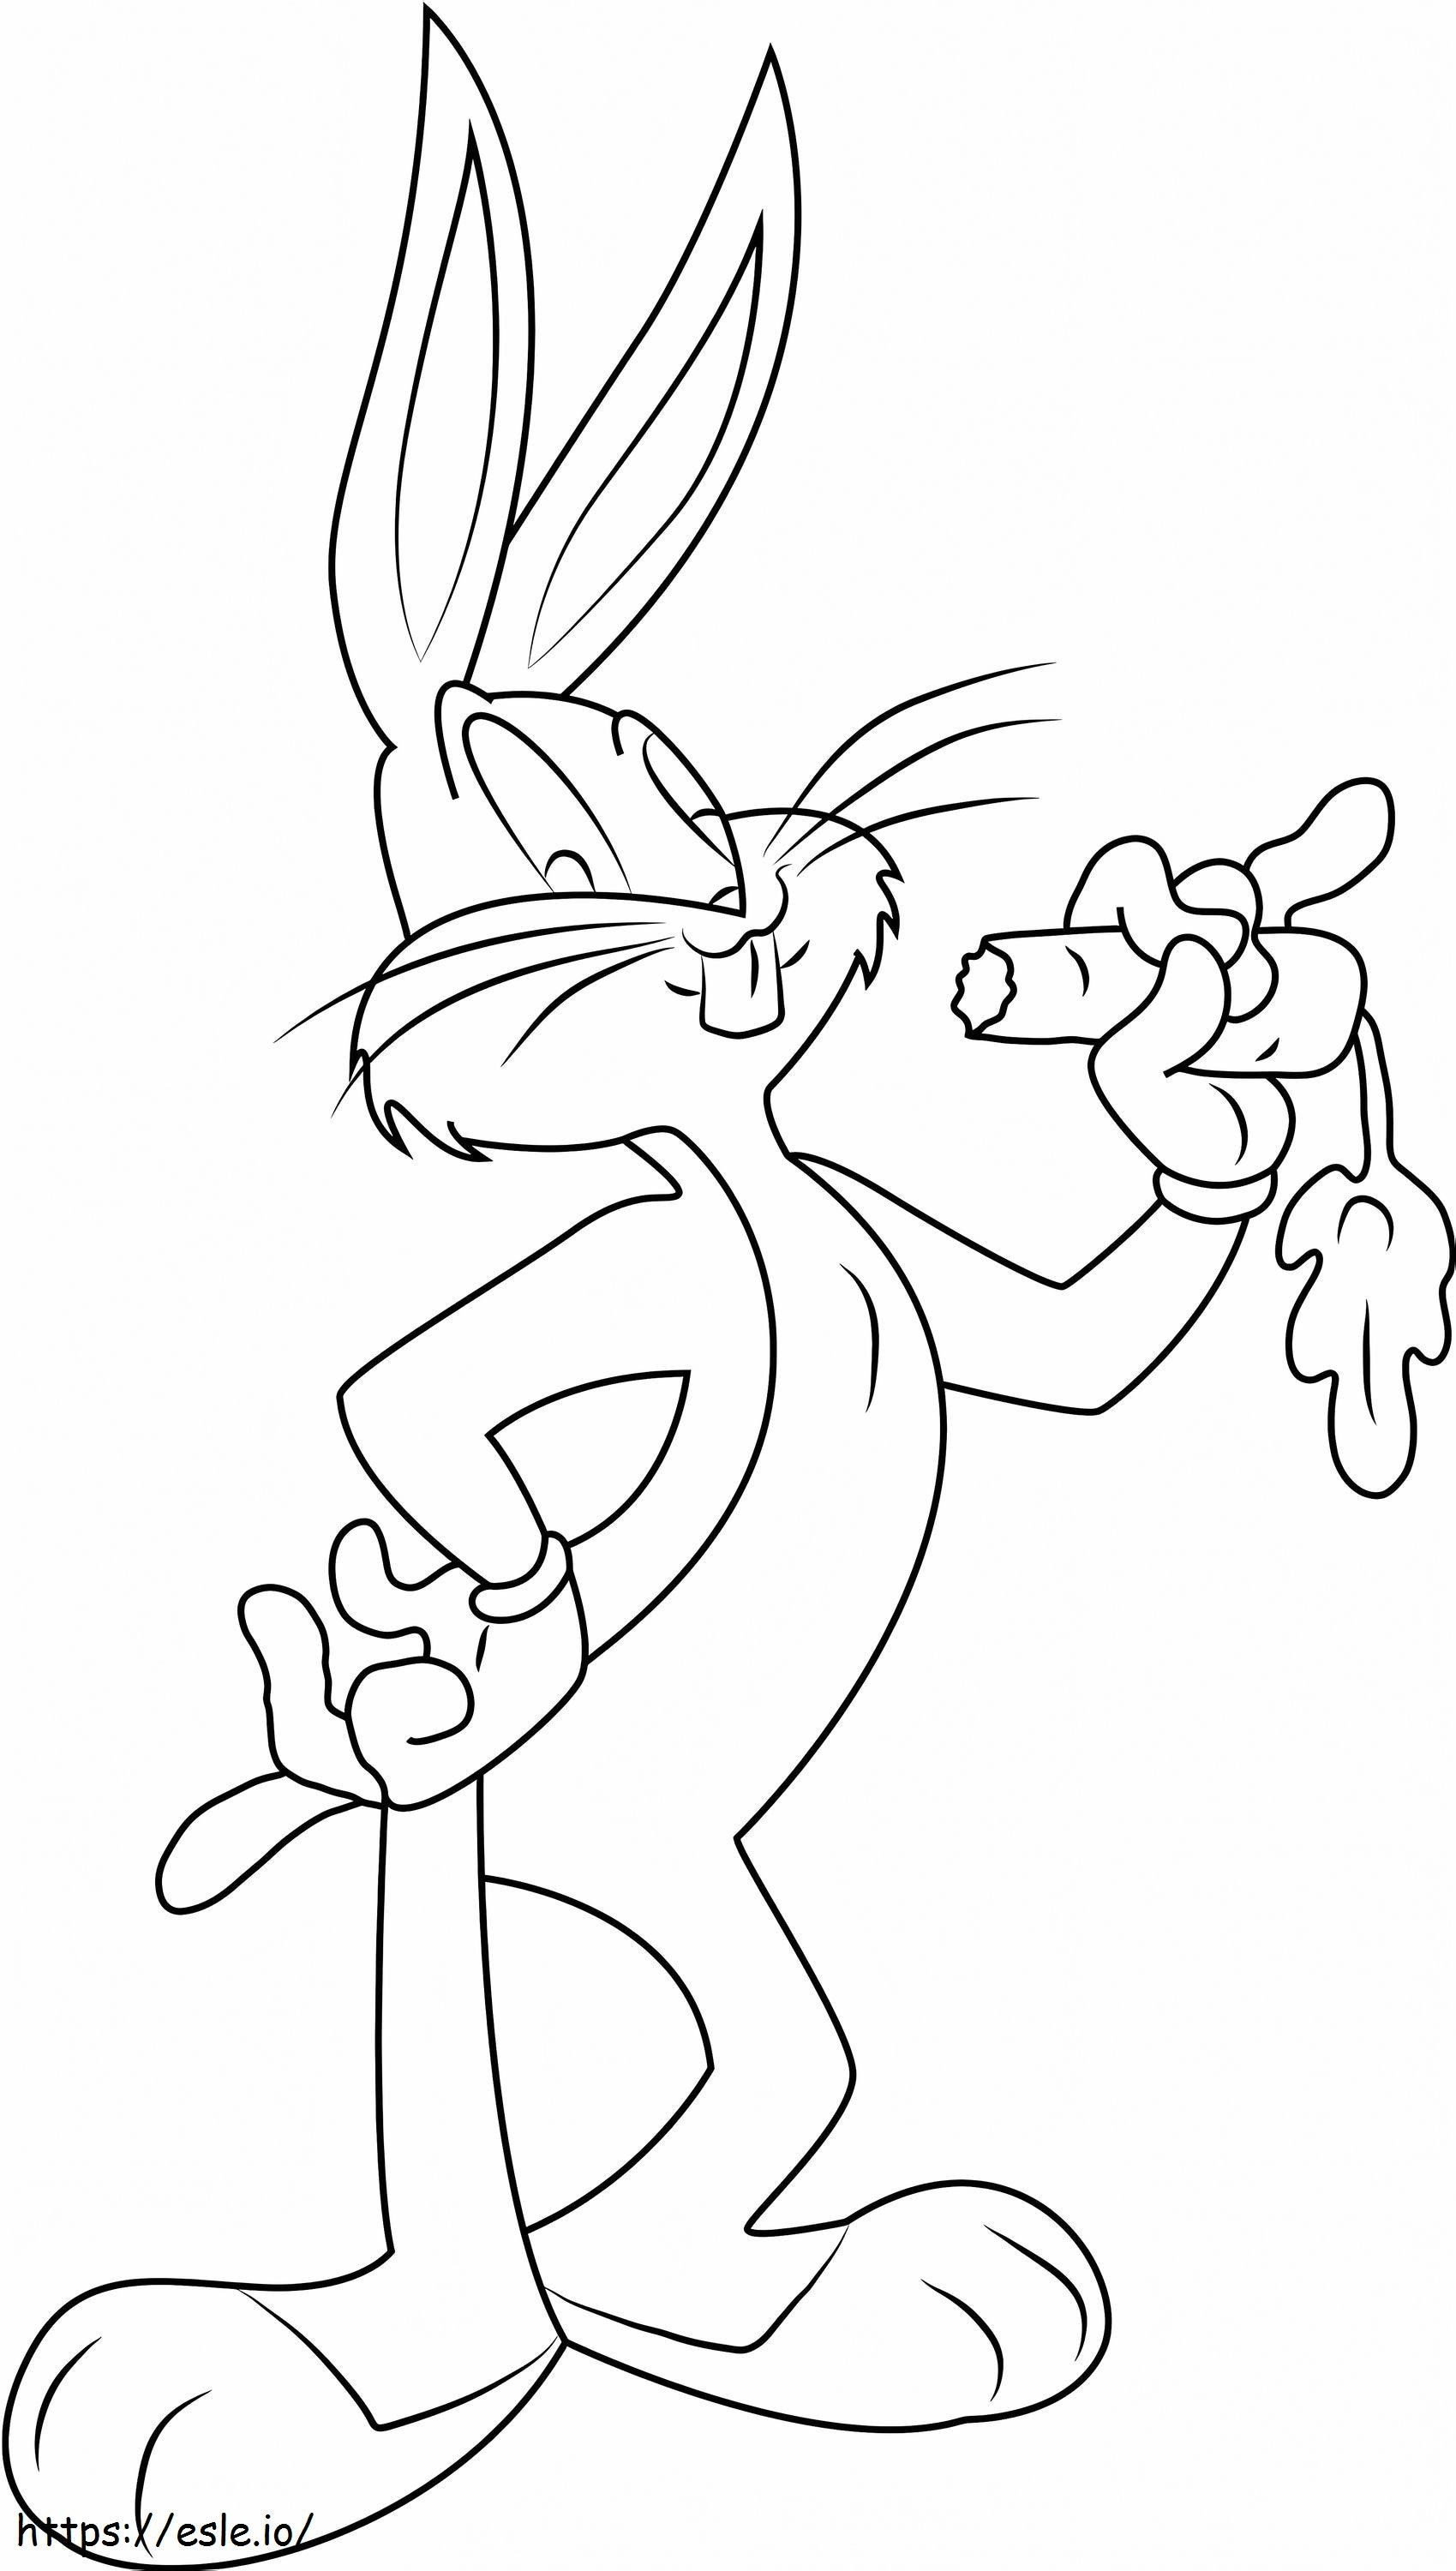  Bugs Bunny che mangia la carota1 da colorare